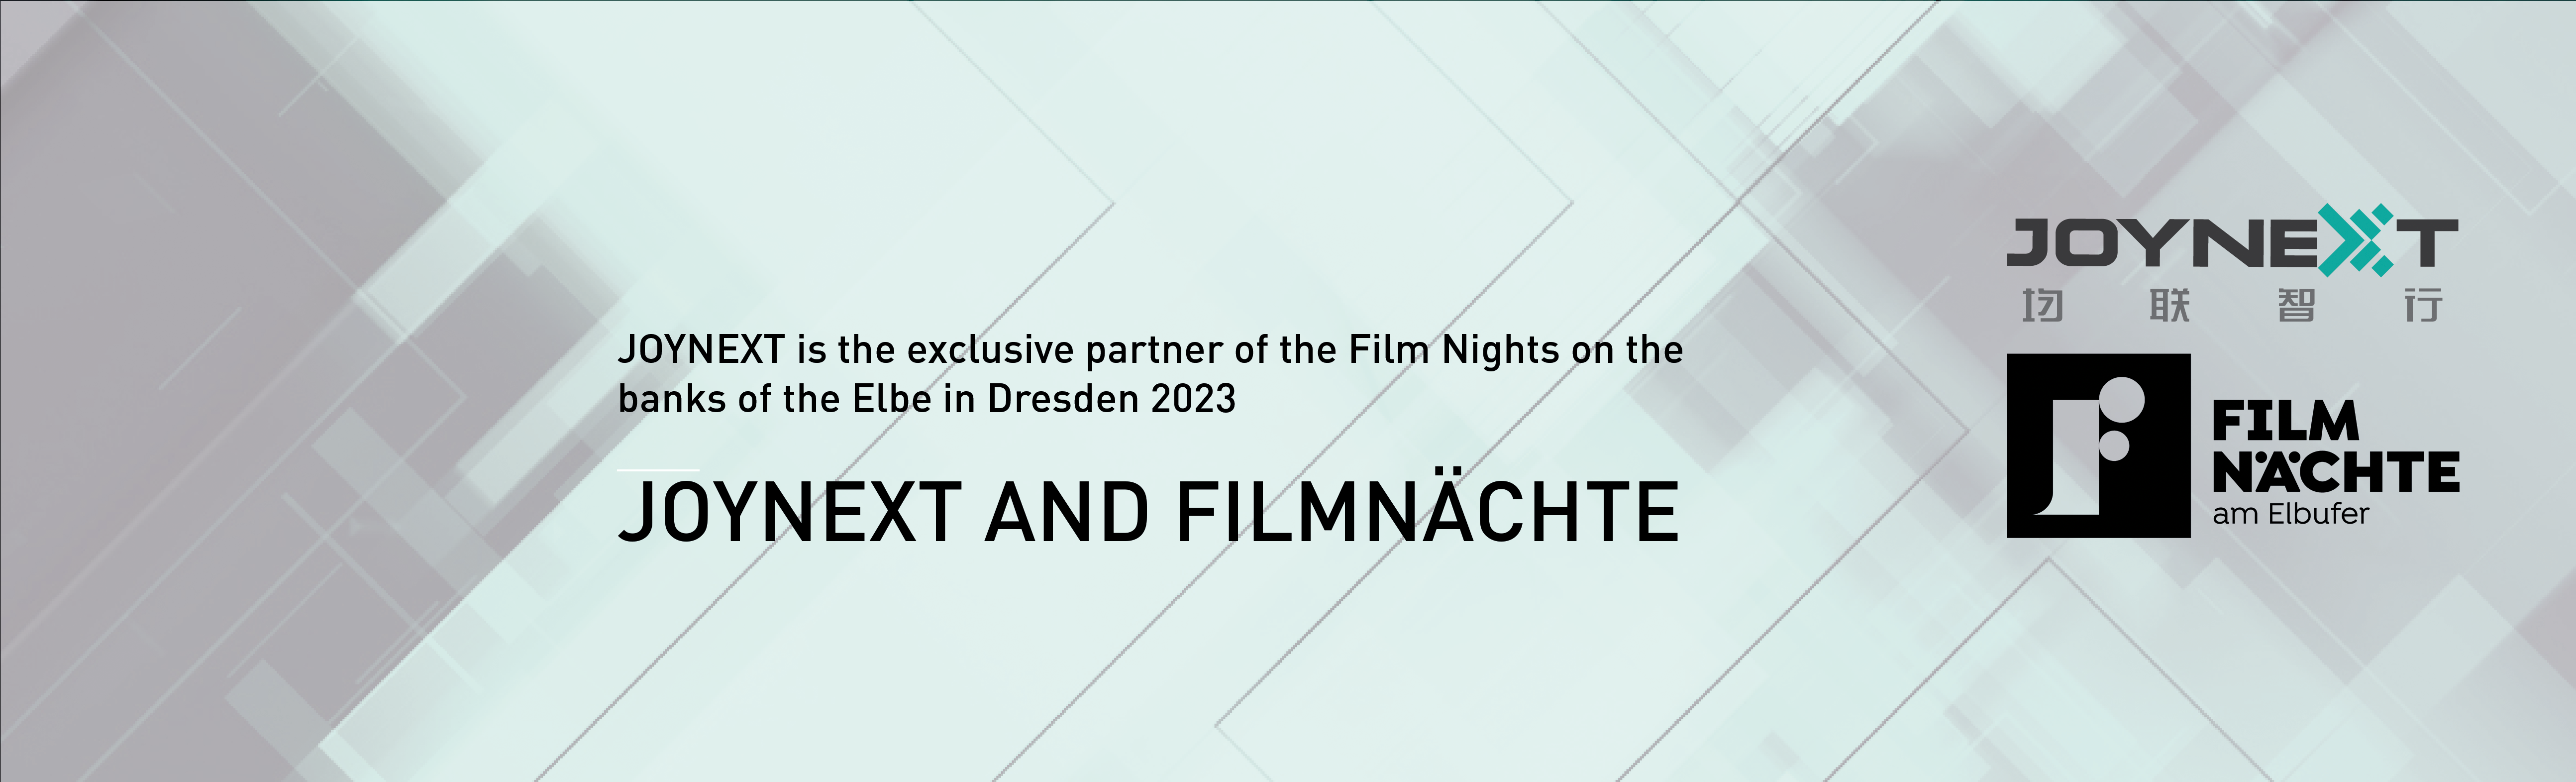 JOYNEXT ist Exklusivpartner der Filmnächte am Elbufer in Dresden 2023